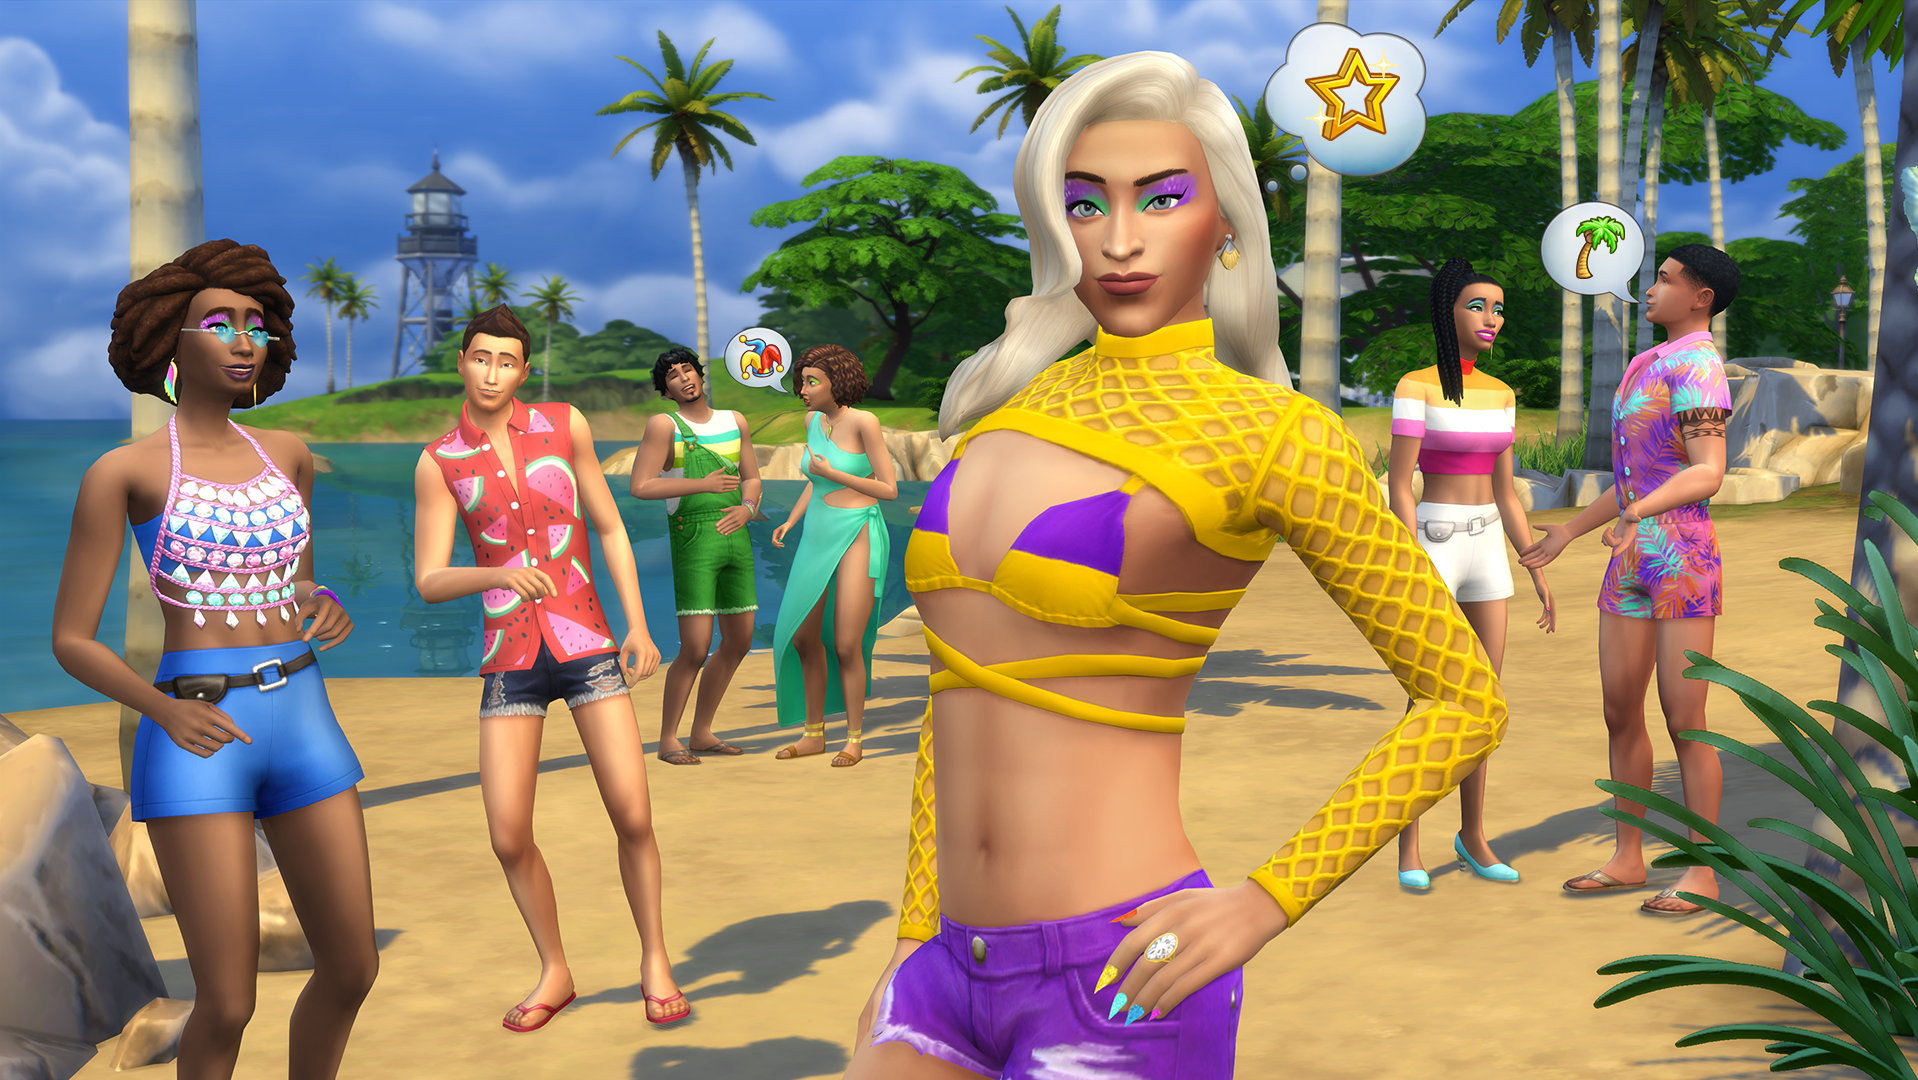 Pabllo Vittar invade The Sims 4 com pacote de carnaval